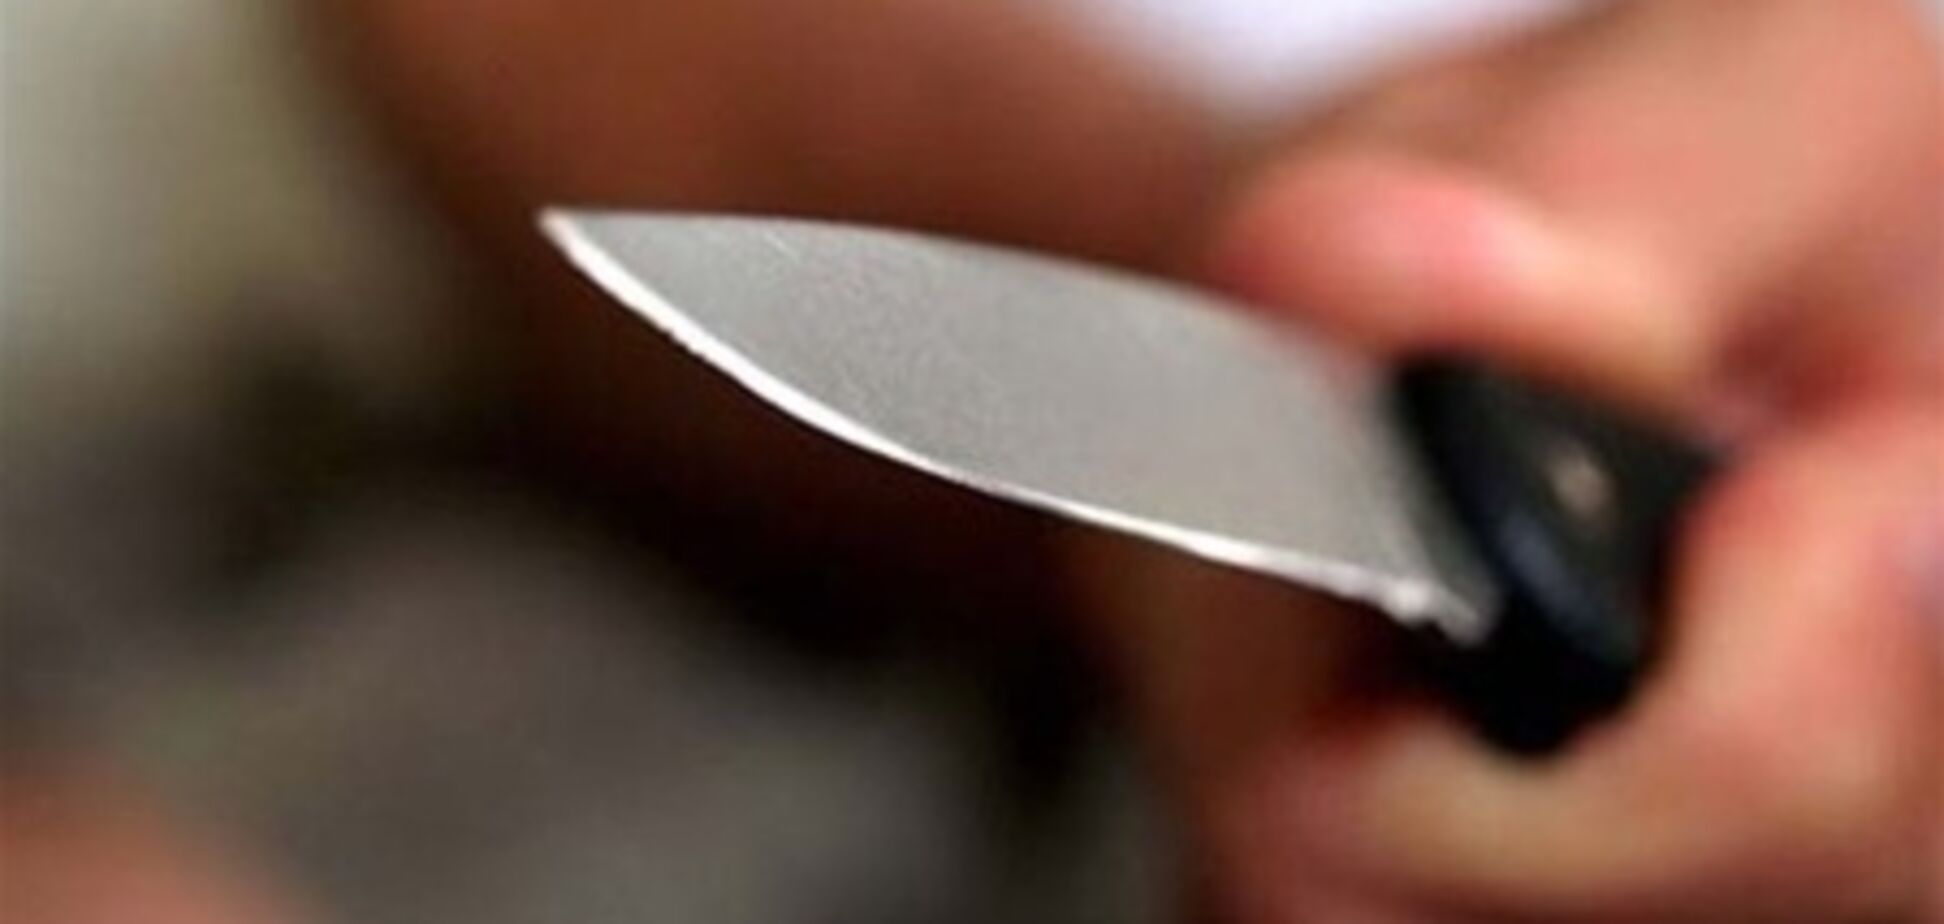 На Полтавщині чоловік з 'білою гарячкою' штрикнув ножем міліціонера